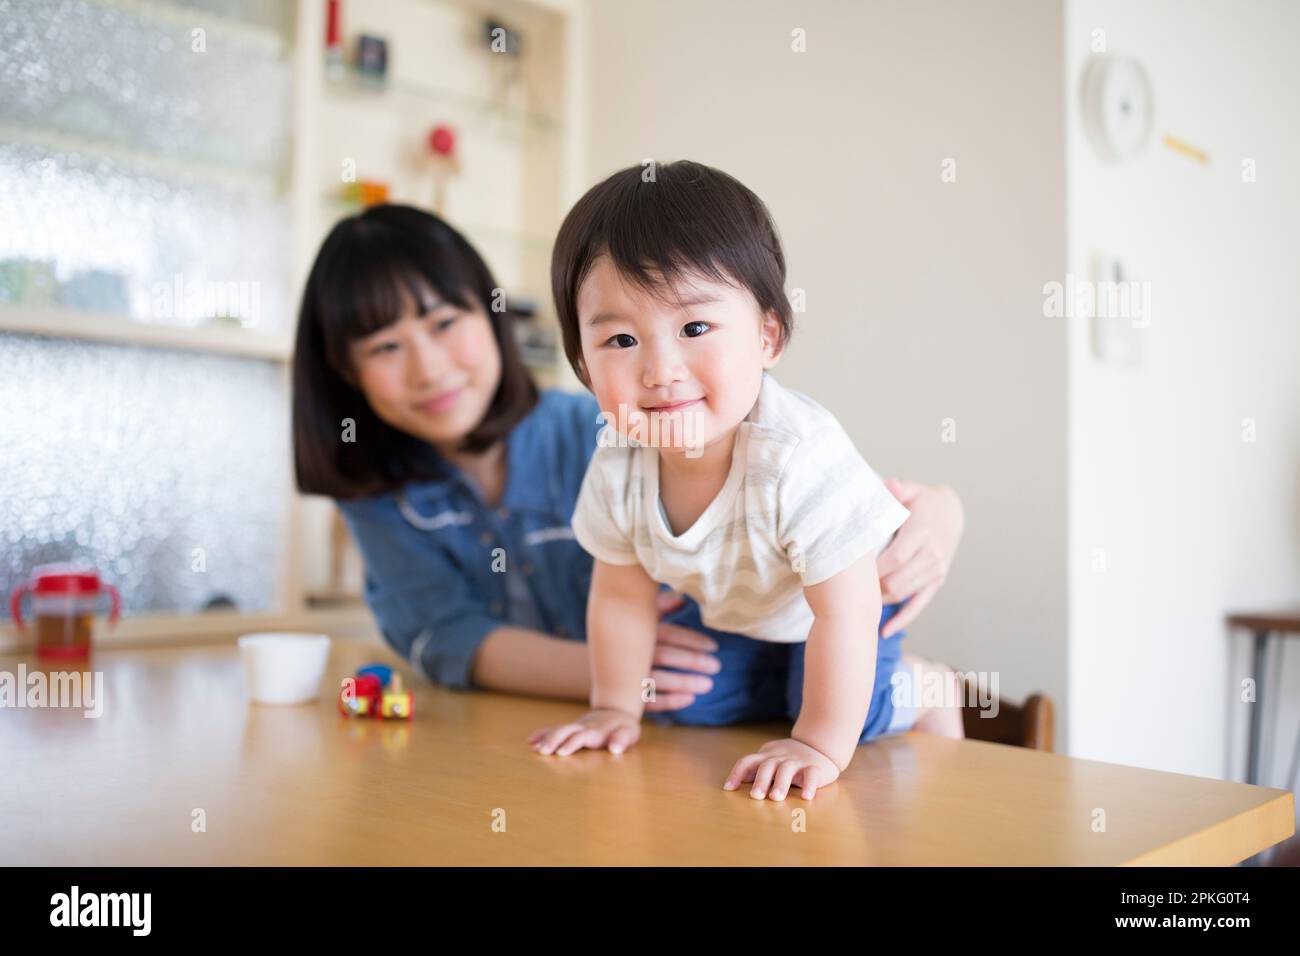 Das Kleinkind lehnt sich über den Esstisch und die Mutter unterstützt ihn Stockfoto